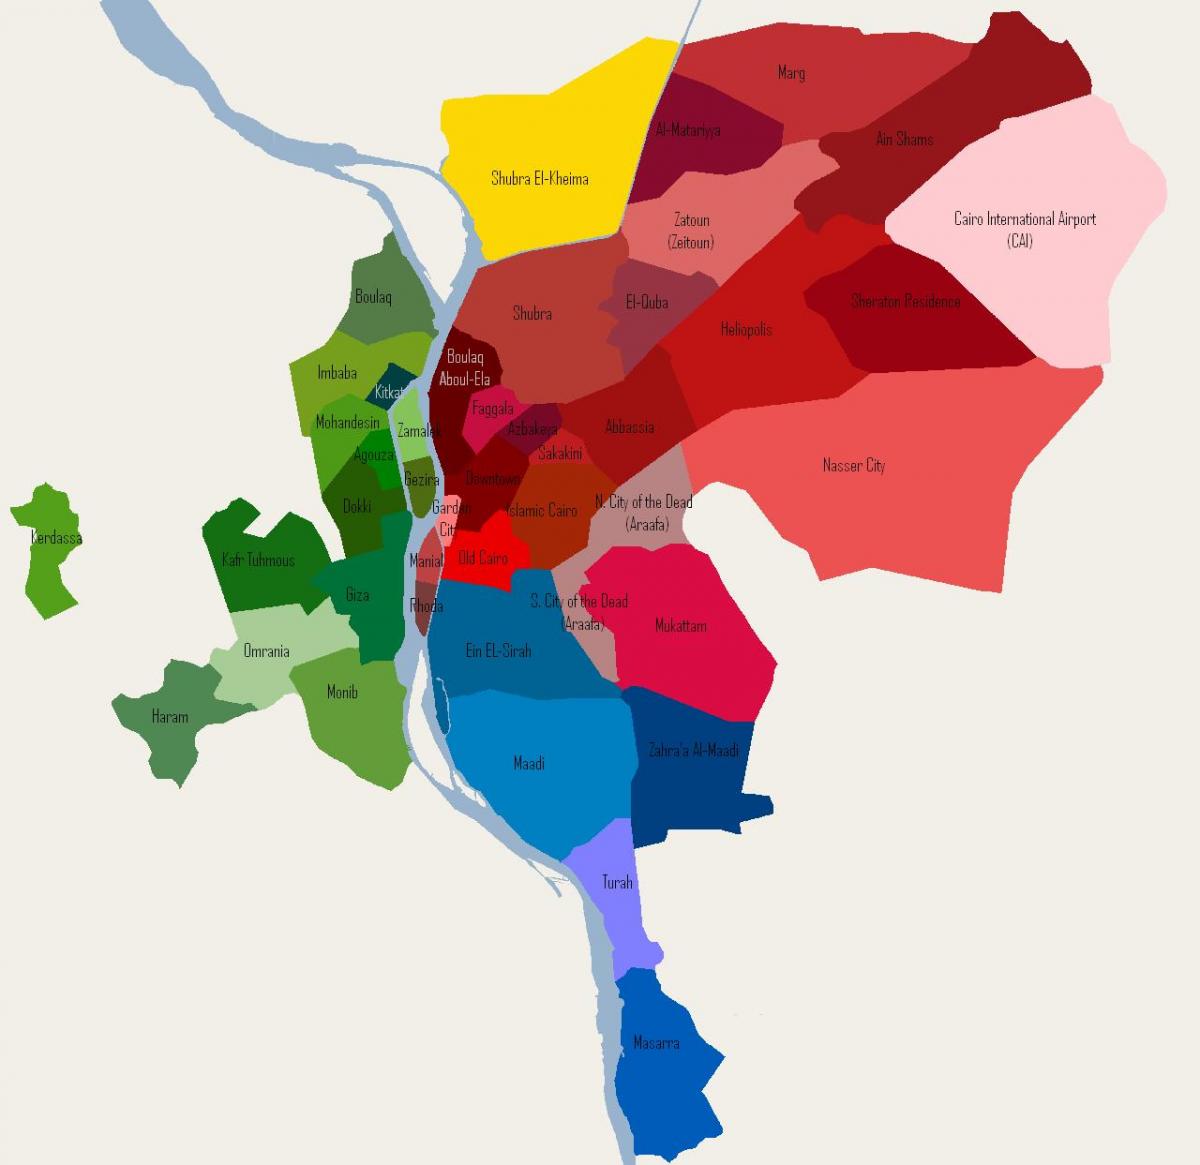 kairo susjedstvu mapu